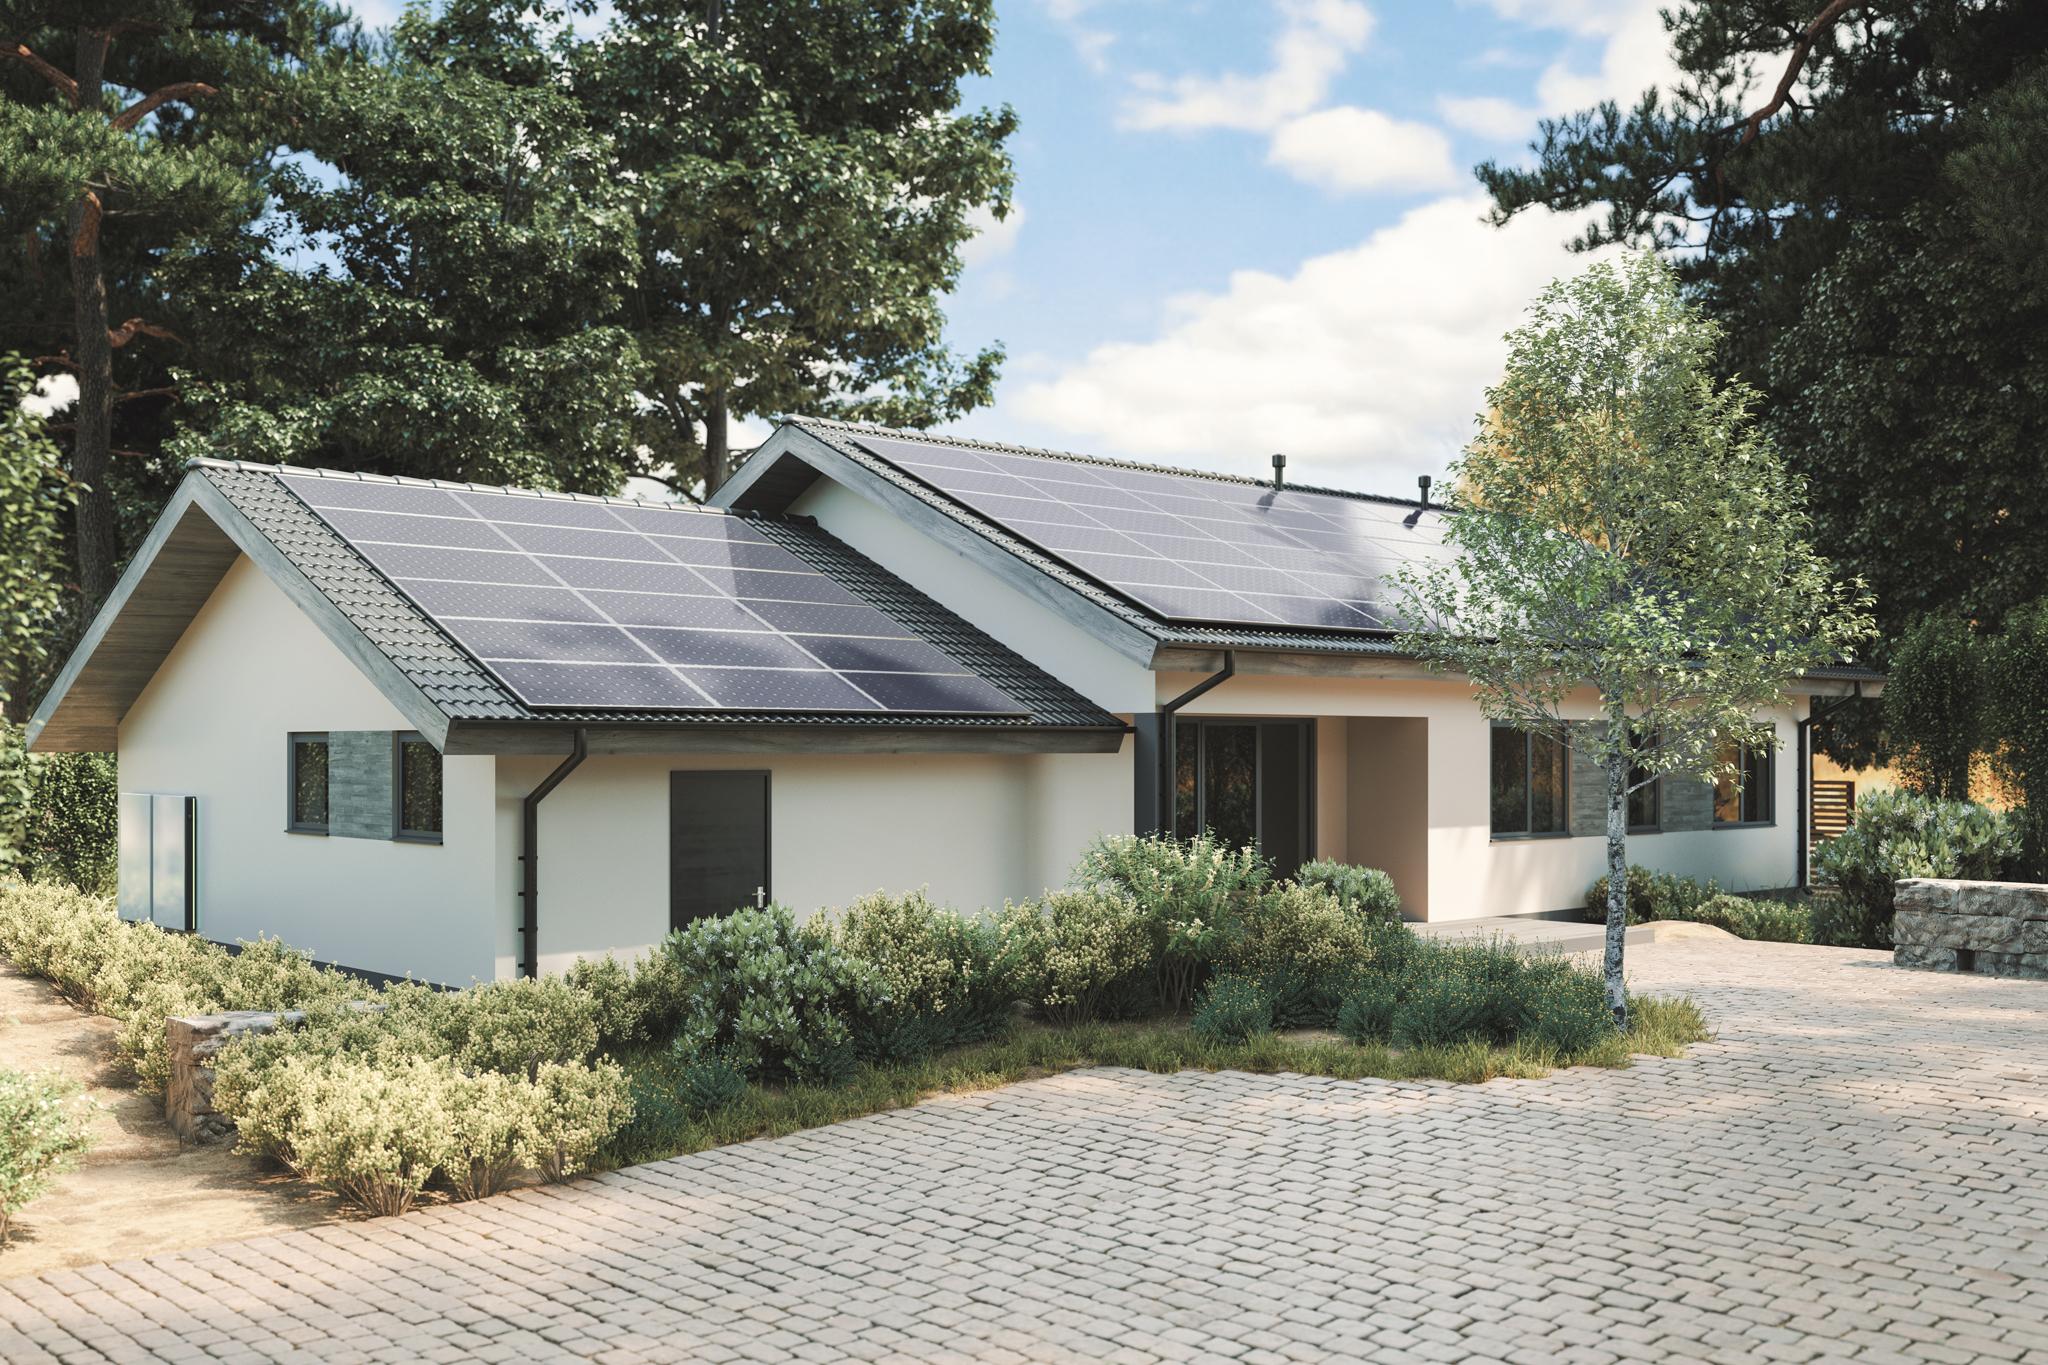 Einfamilienhaus mit PV-Anlage auf dem Dach - Funktioniert Photovoltaik nachts